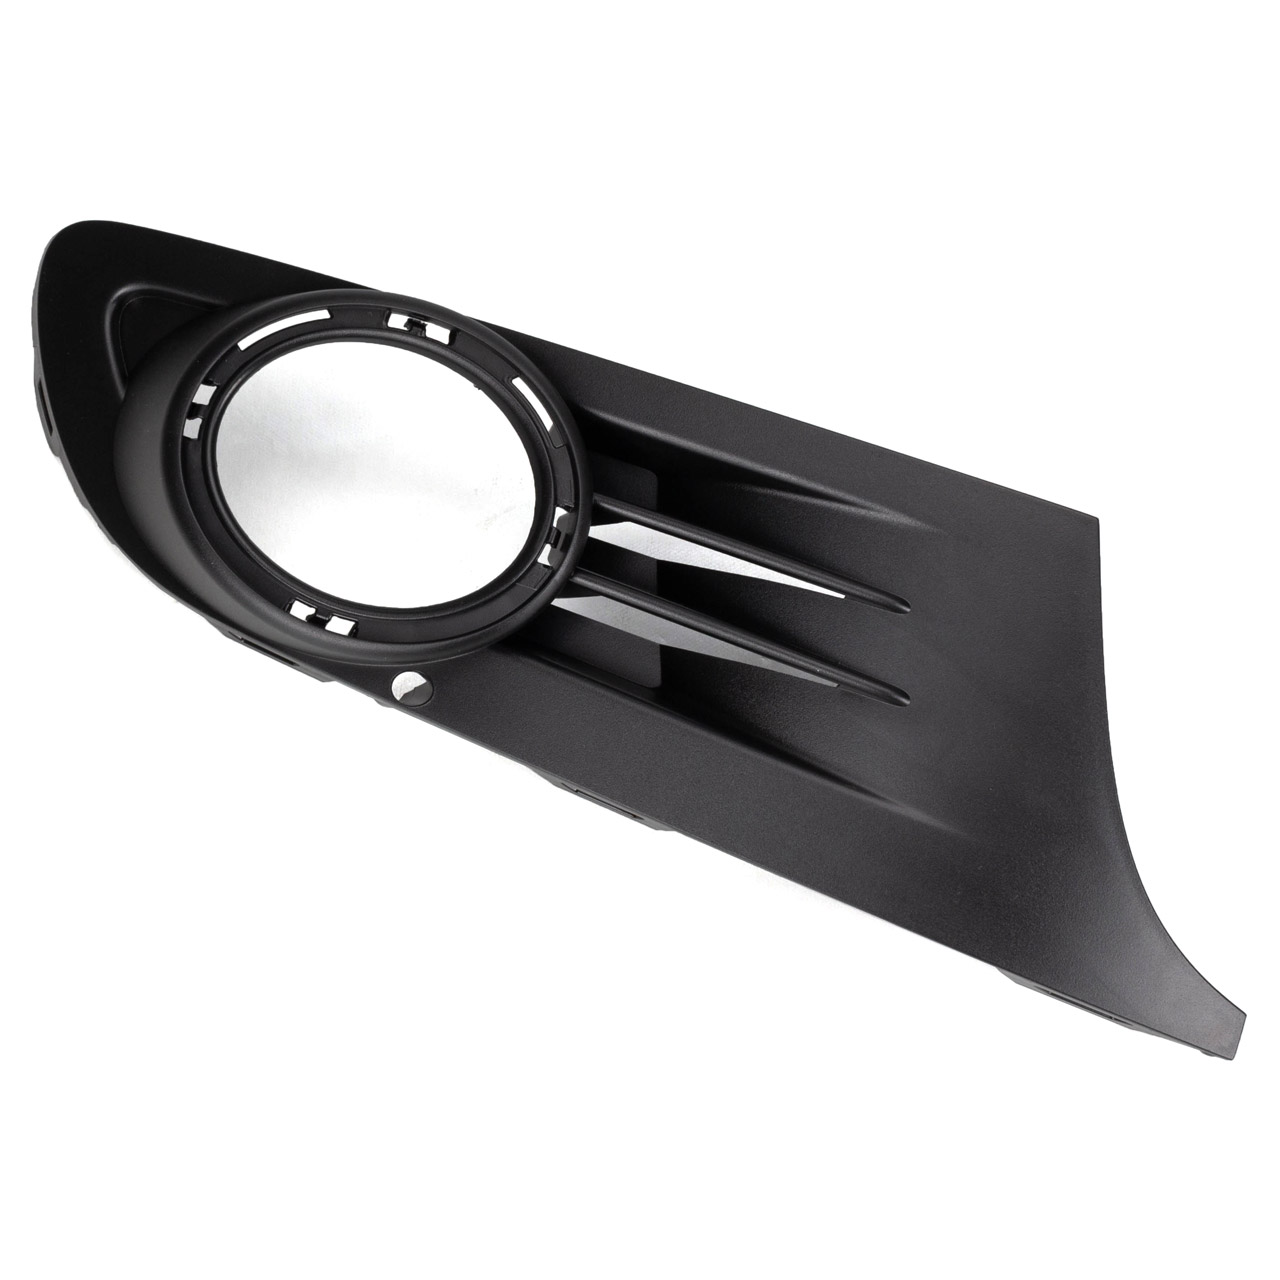 Auto-schwarze Frontstoßstangen-Nebelscheinwerfer-Abdeckung ohne Loch  passend für 2019 2020 Ks7z17b814aa Fo1039182 4m5a-a